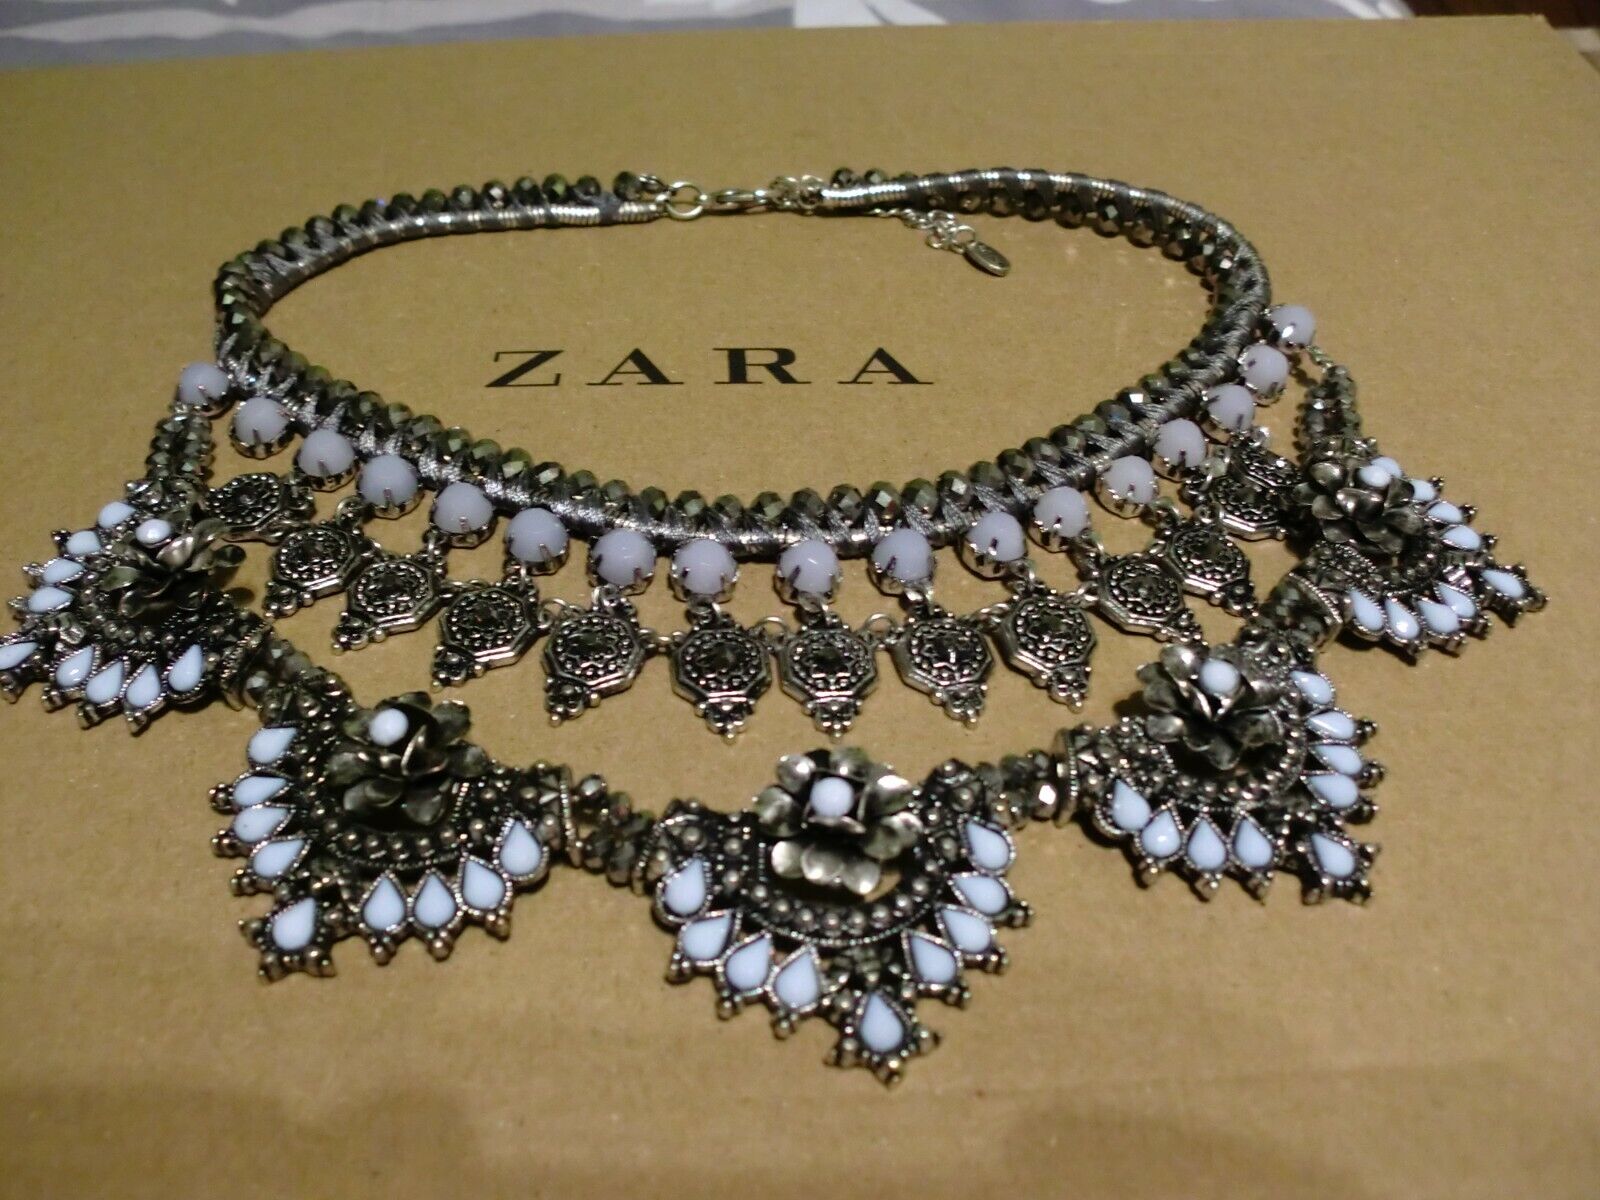 Zara Ethno mega statement Kette necklace boho top Blogger Collier Steine selten